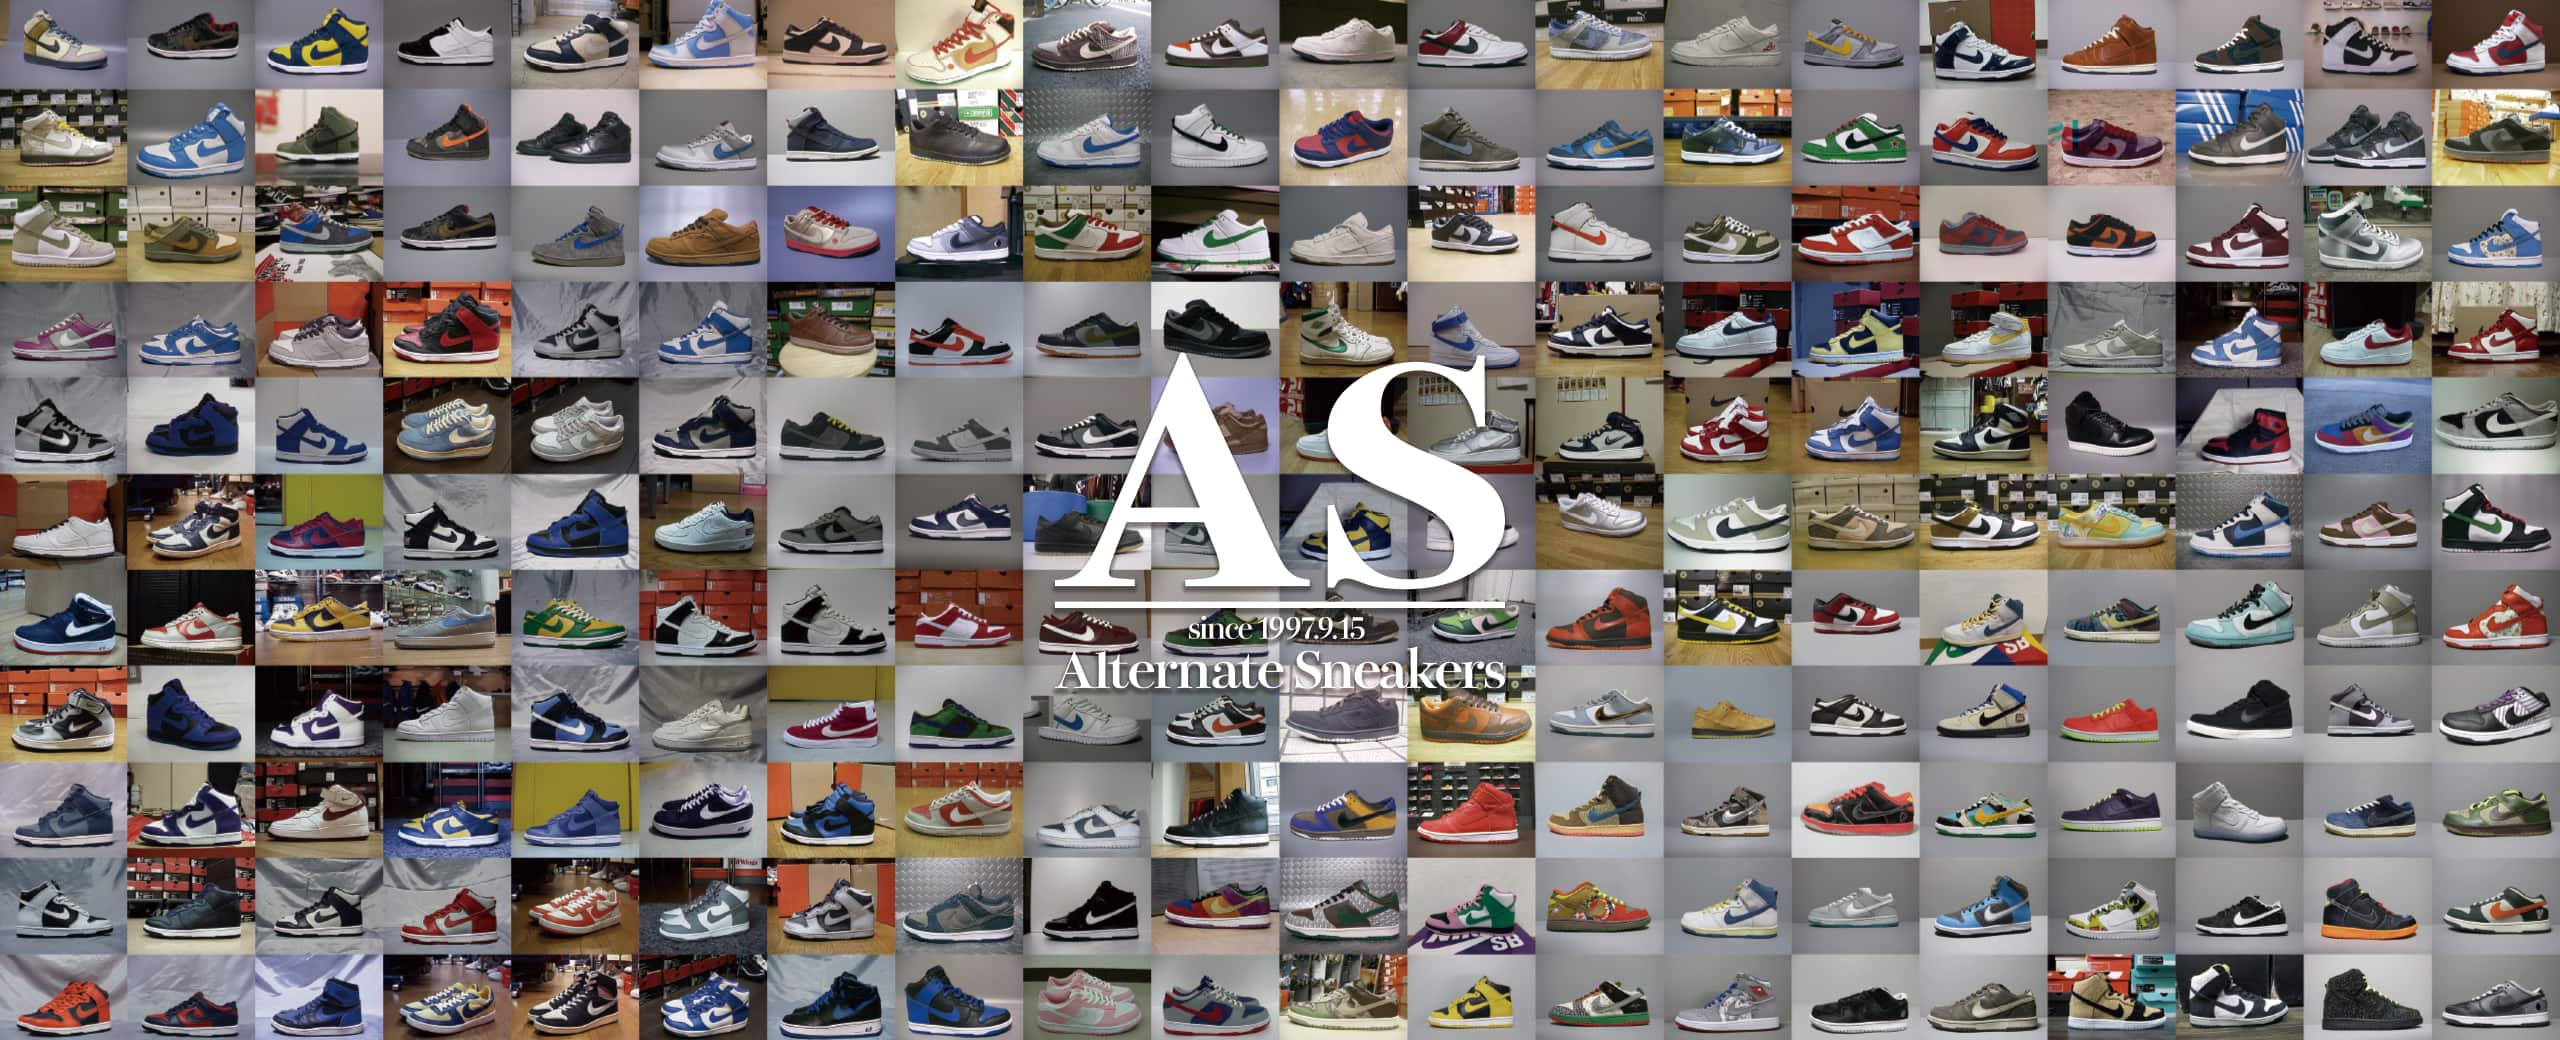 "Alternate Sneakers"